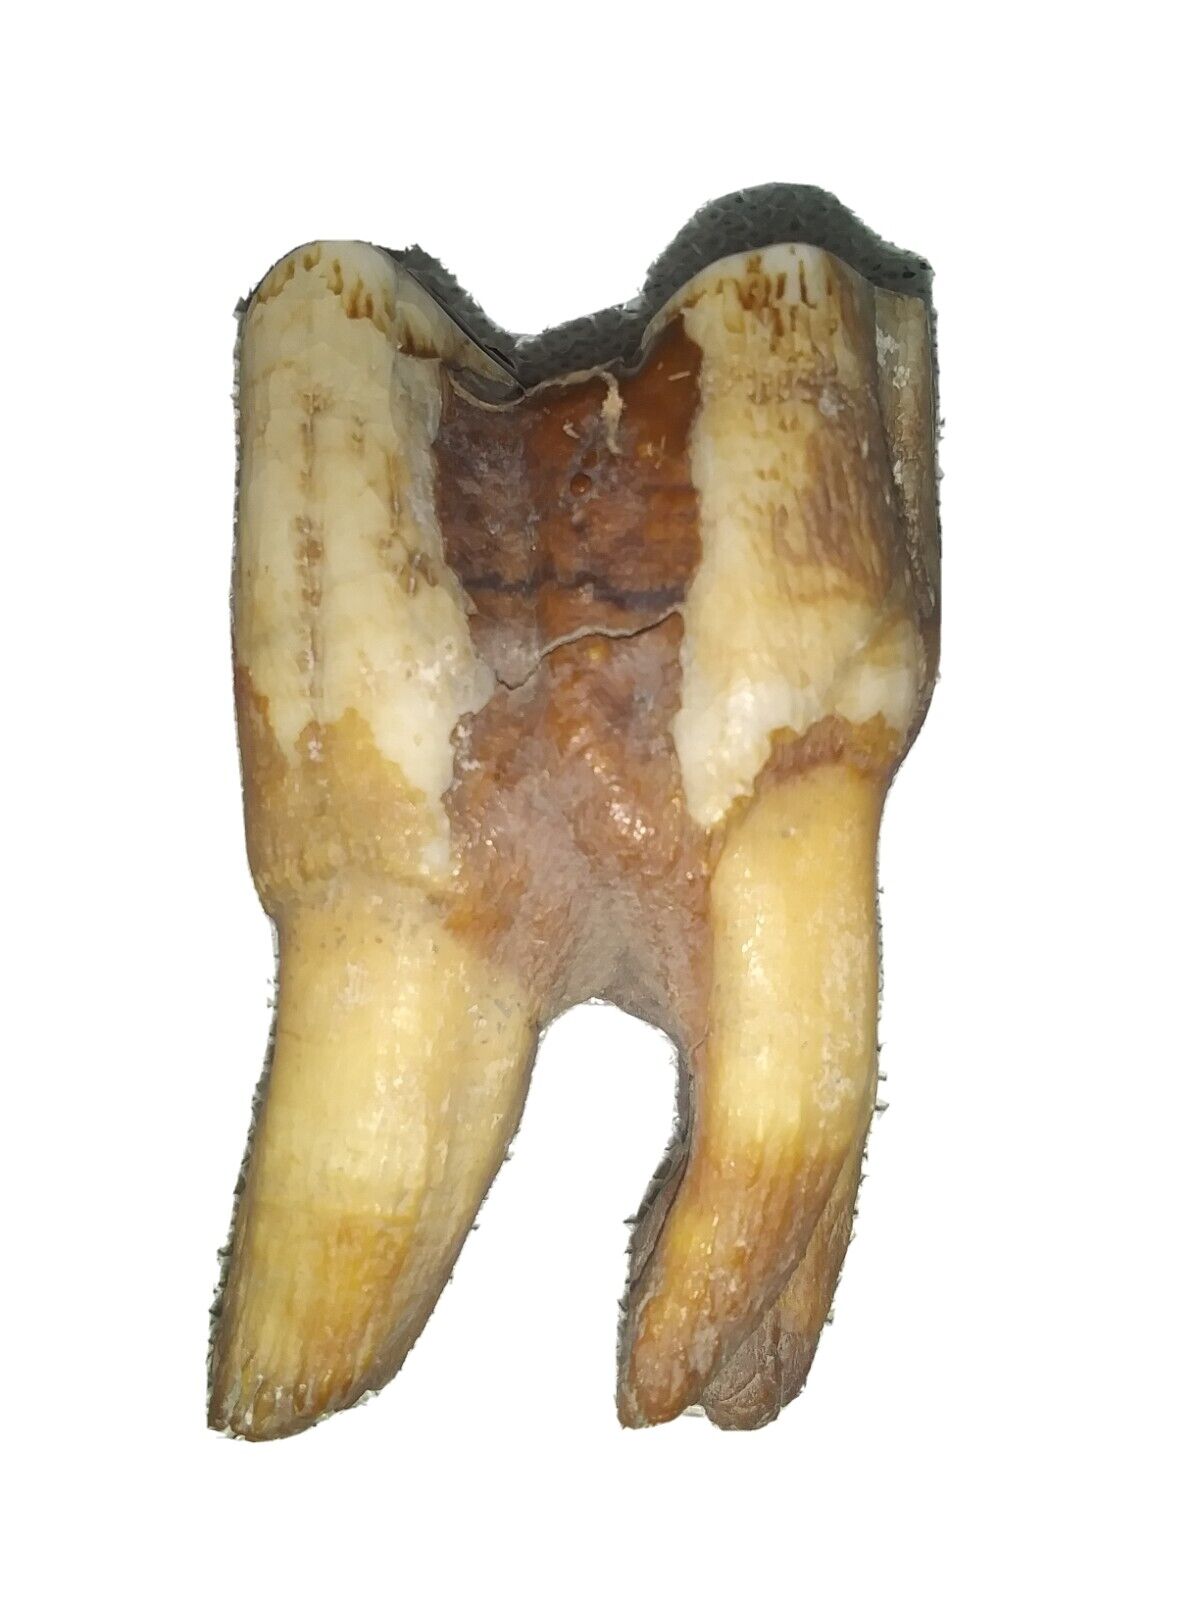 Woolly Rhinoceros Fossil Tooth, Hair Omsk Siberia Permafrost Pleistocene Ice Age